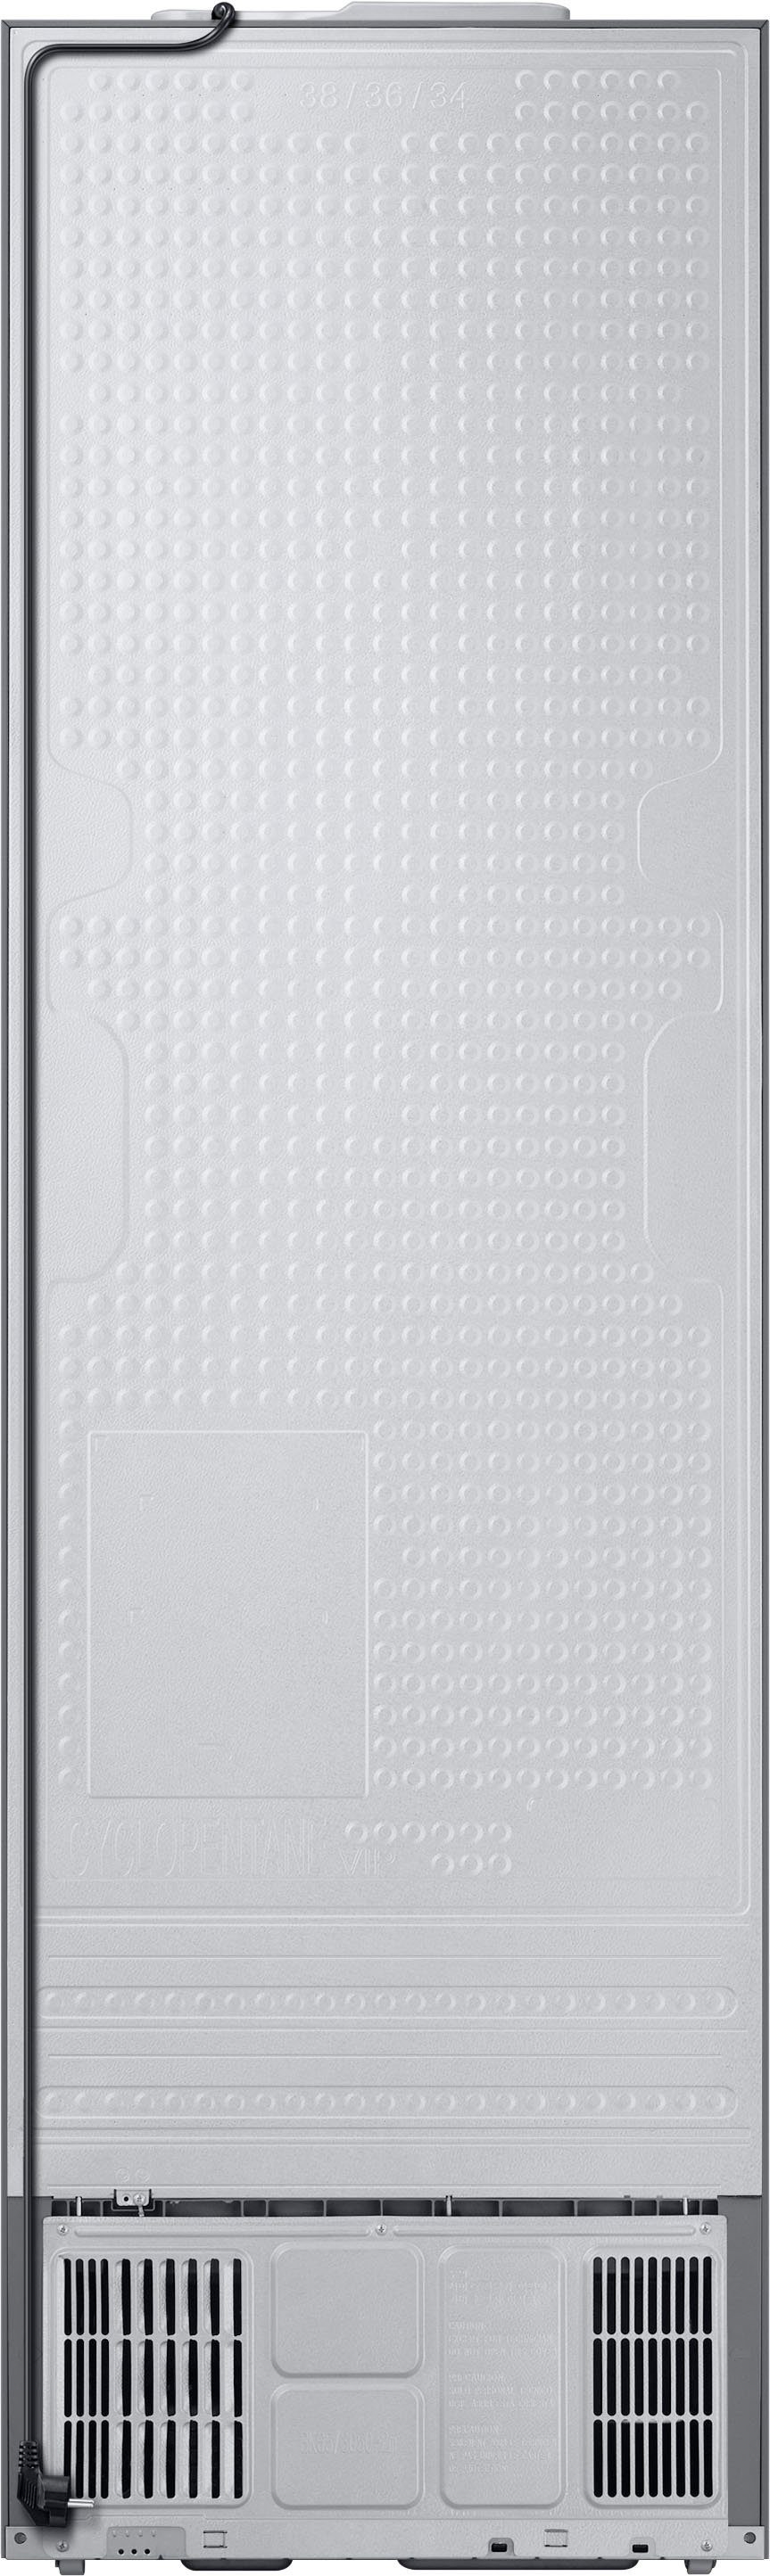 Samsung Kühl-/Gefrierkombination Bespoke RL38A7B5BS9, cm cm hoch, breit 203 59,5